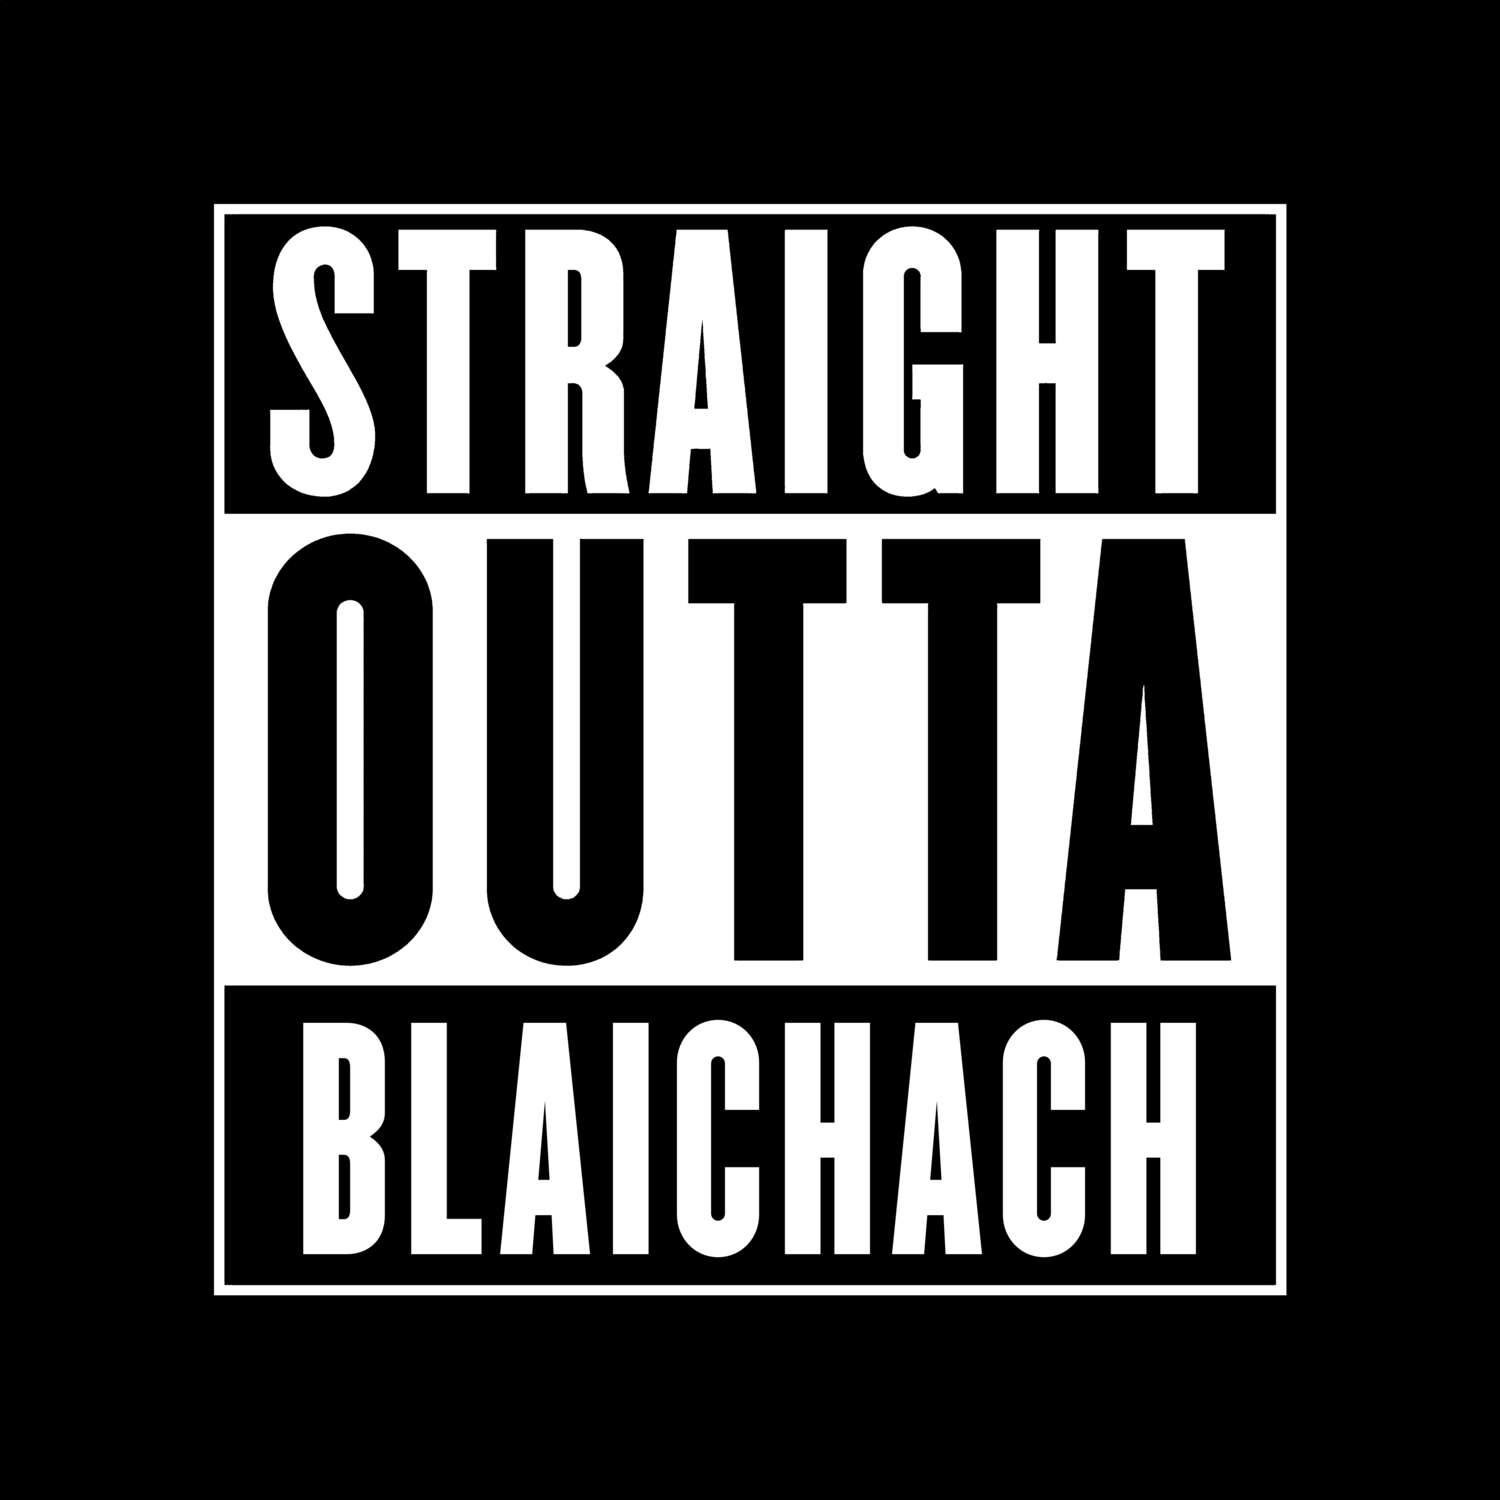 Blaichach T-Shirt »Straight Outta«